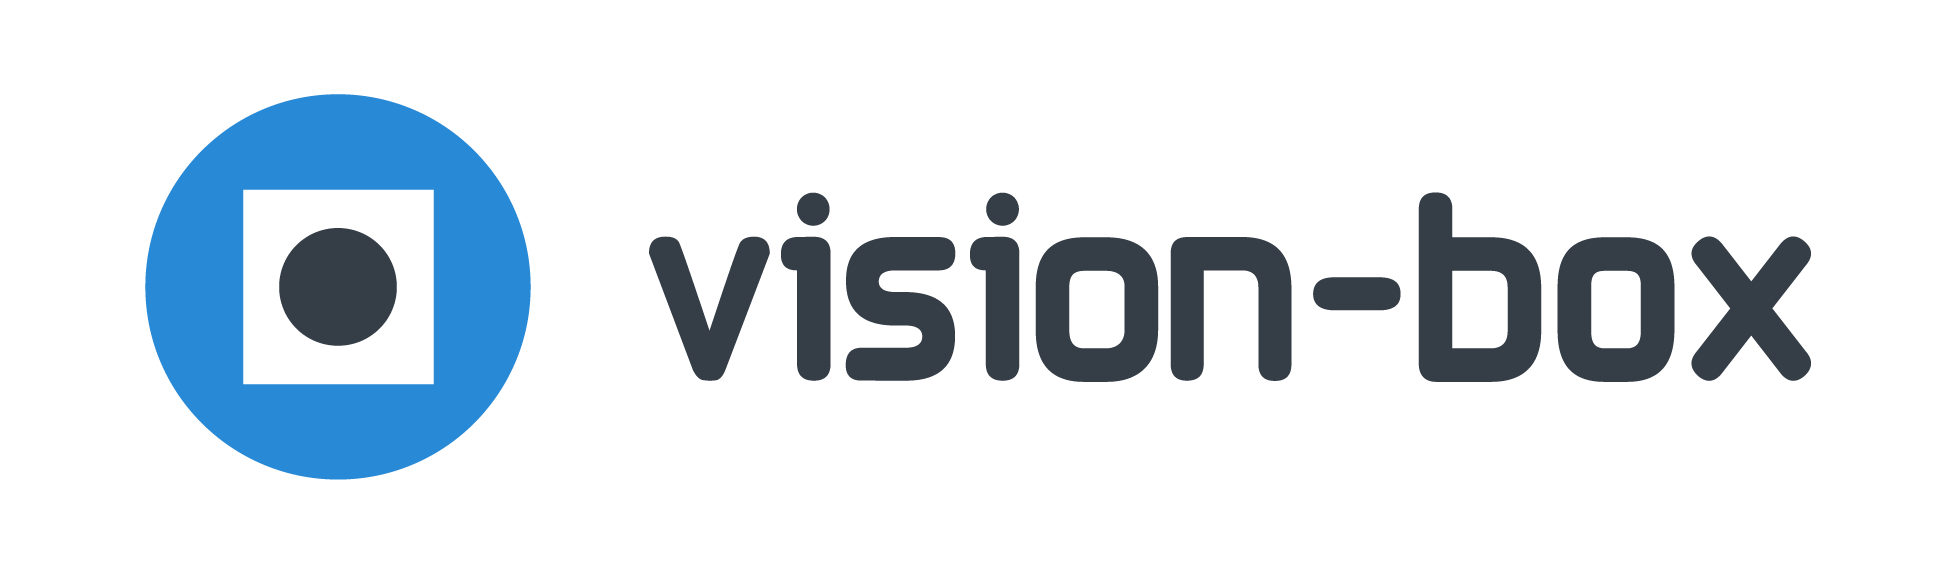 Vision-Box_Logo.png